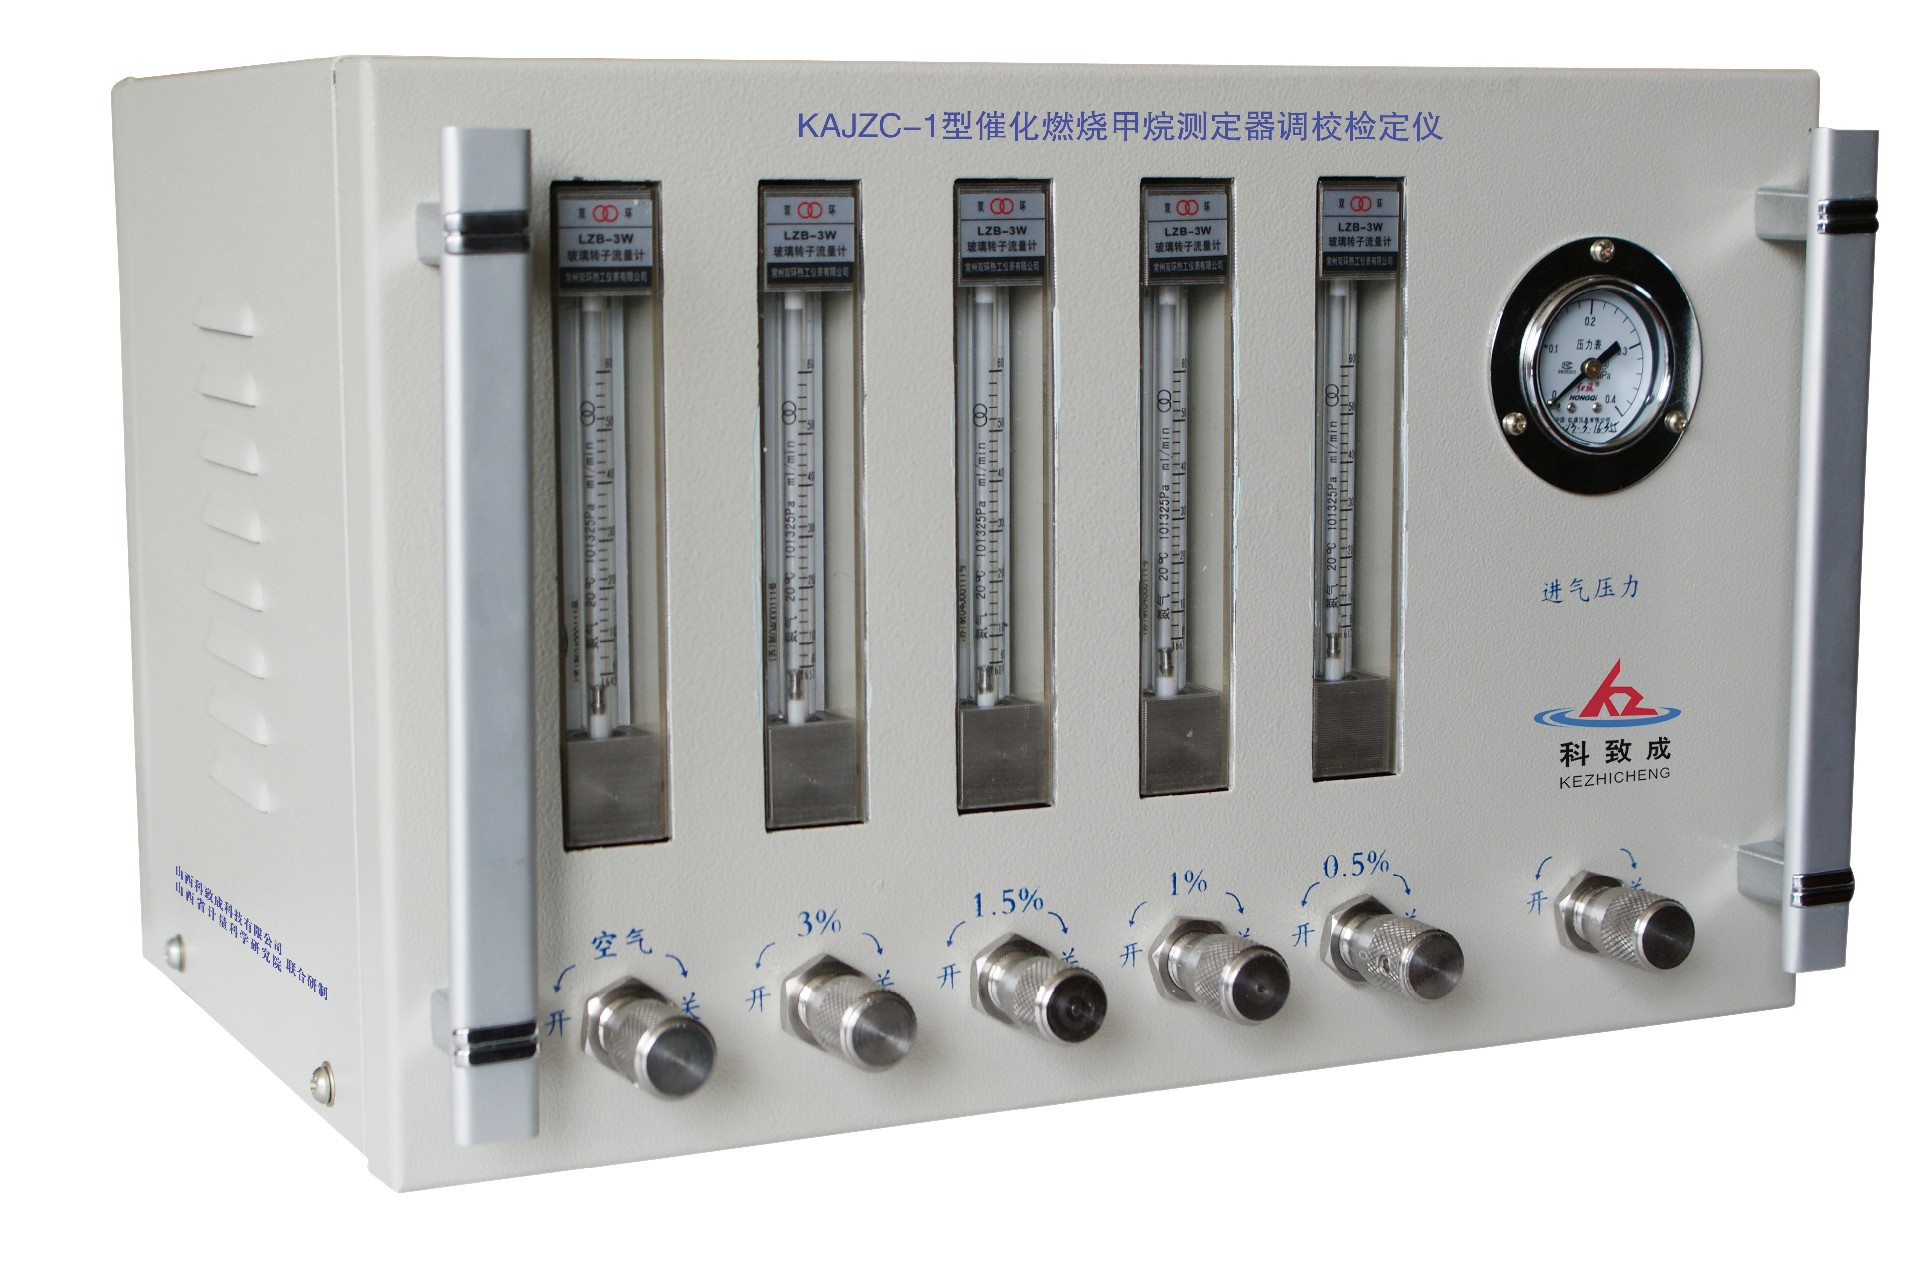 六盘水KAJZC-1型催化燃烧甲烷测定器调校检定仪